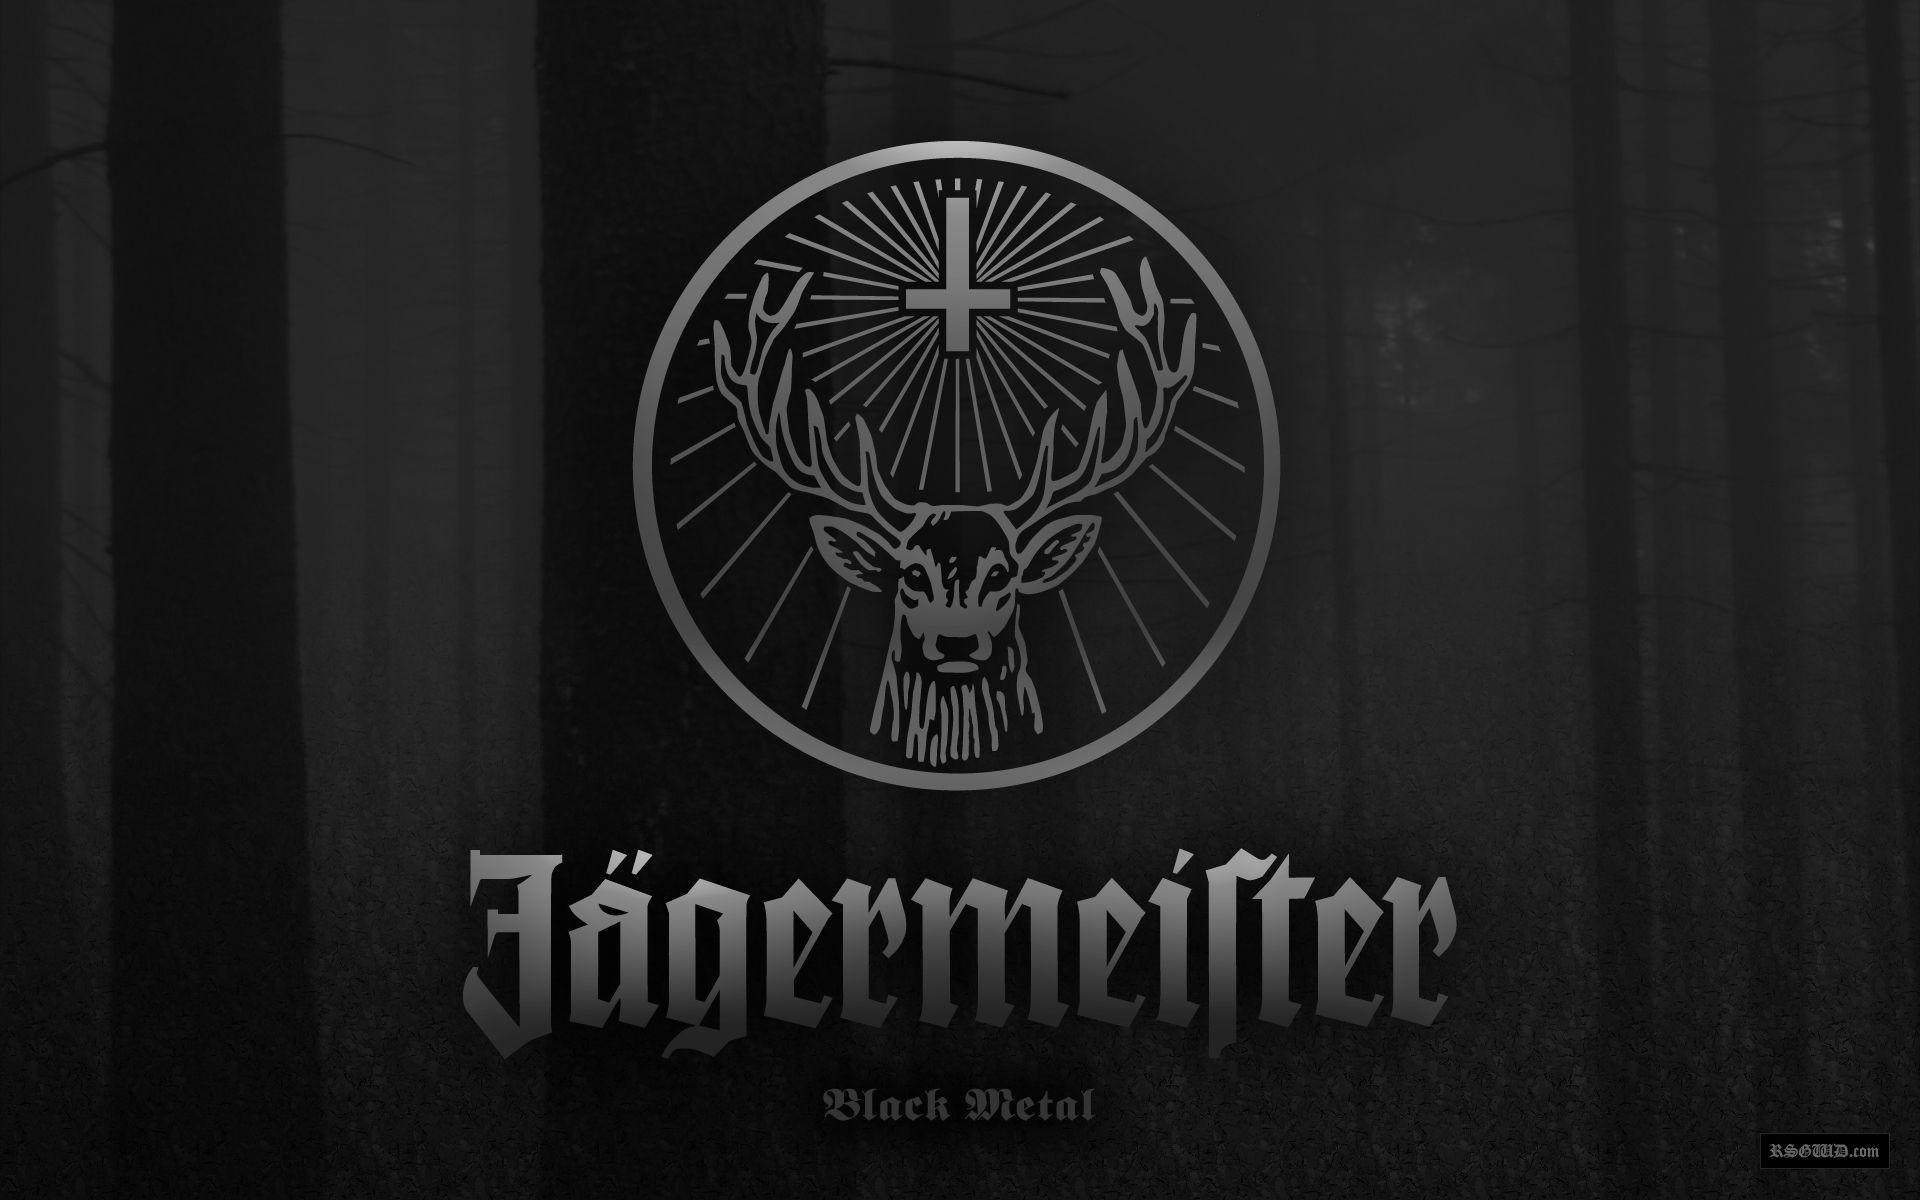 Jägermeister by Woka Studio on Dribbble